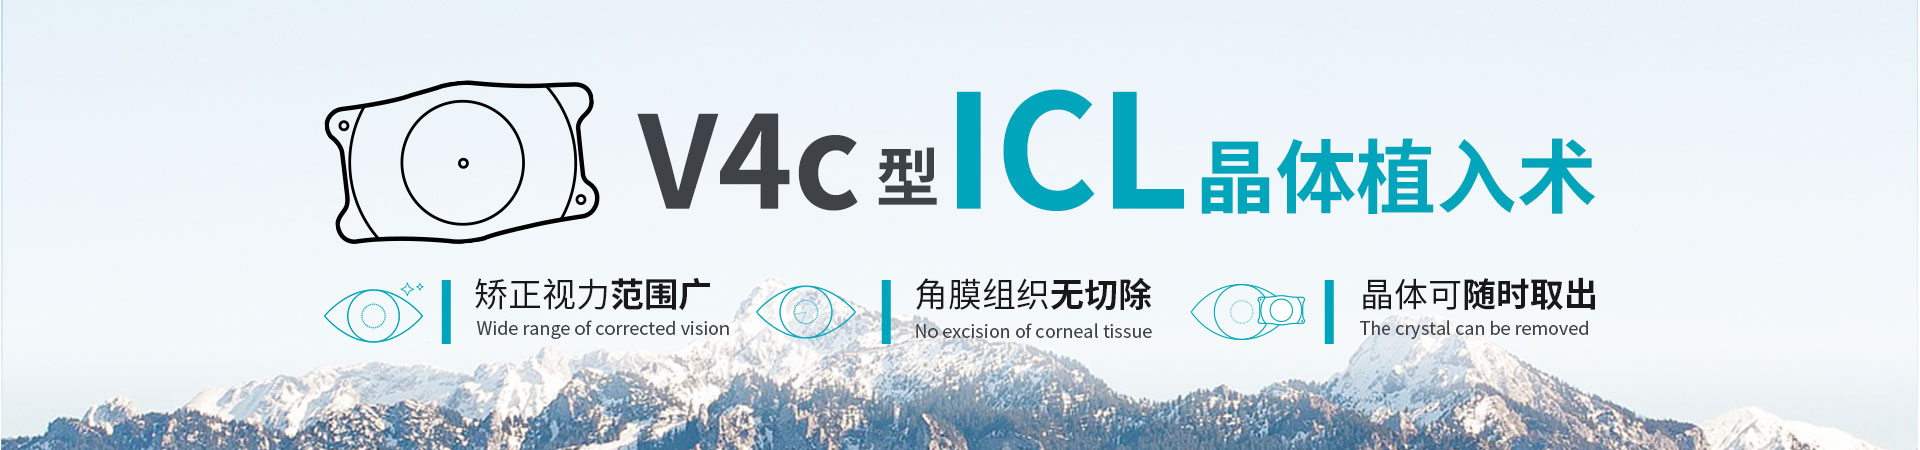 V4c型ICL晶体植入术